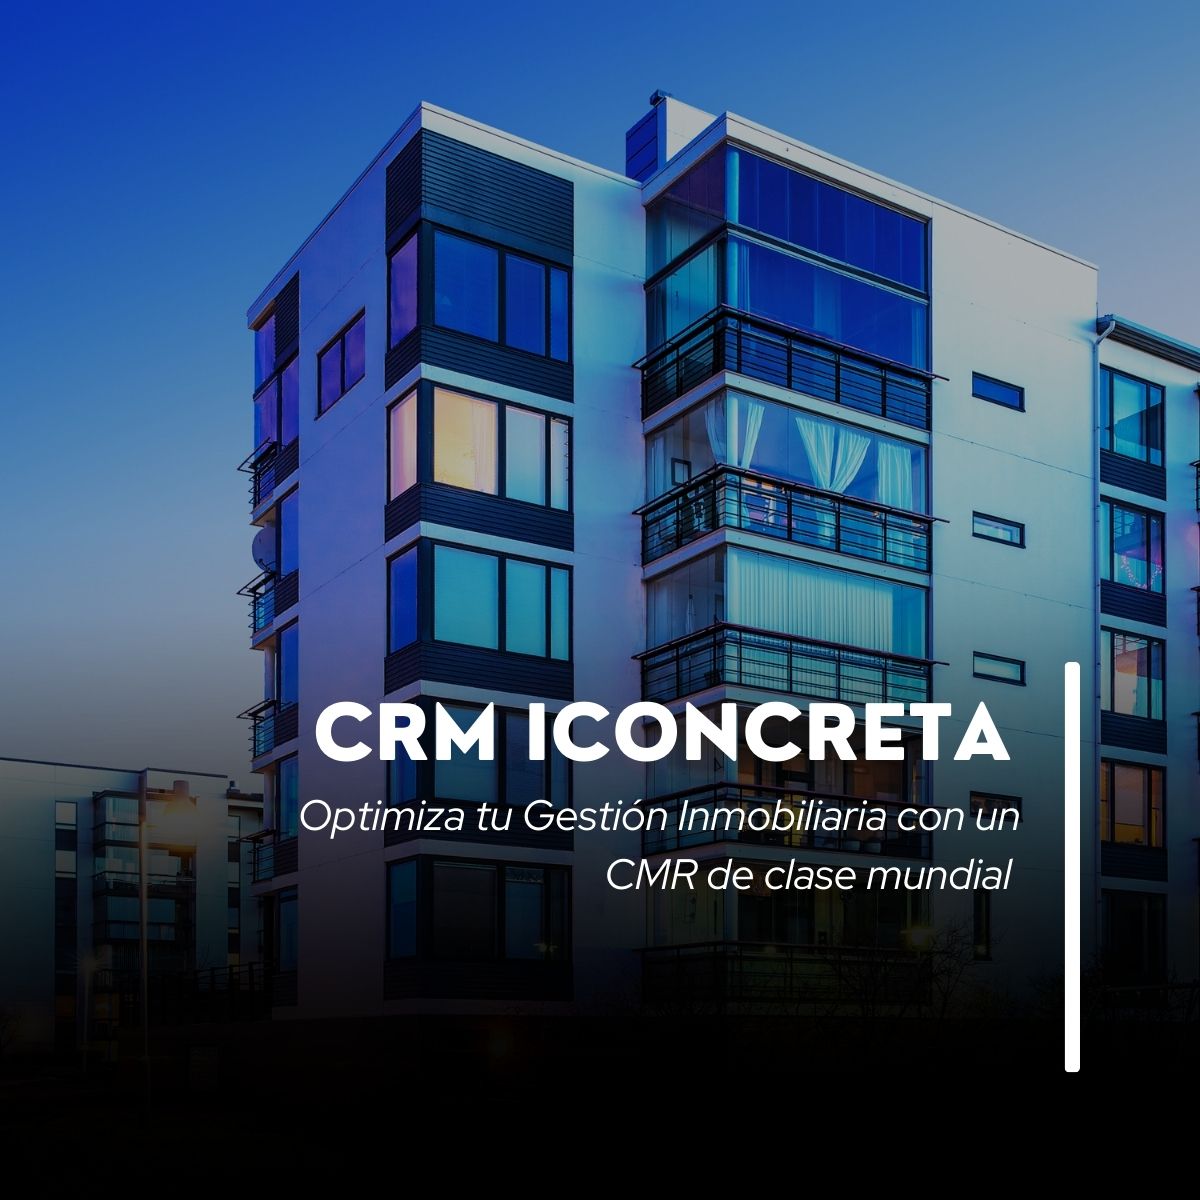 Optimiza tu Gestión Inmobiliaria con CRM ICONCRETA